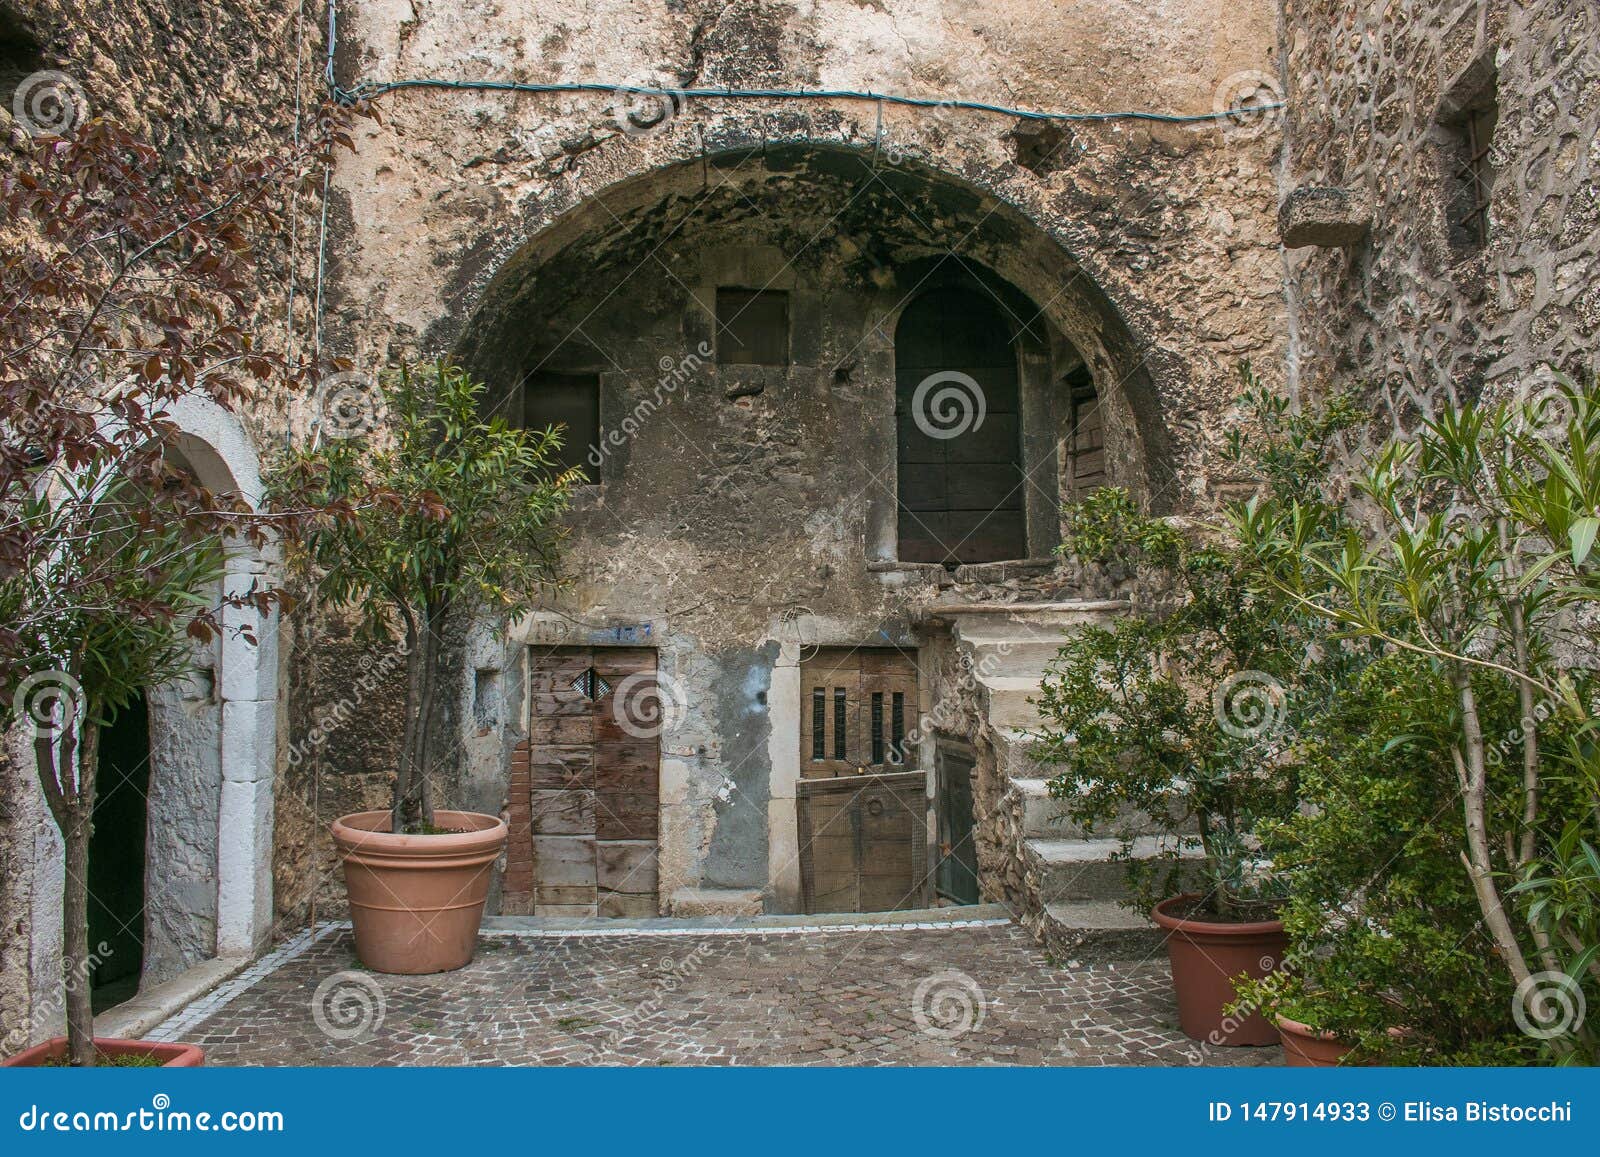 arch in the historic center of santo stefano di sessanio in abruzzo